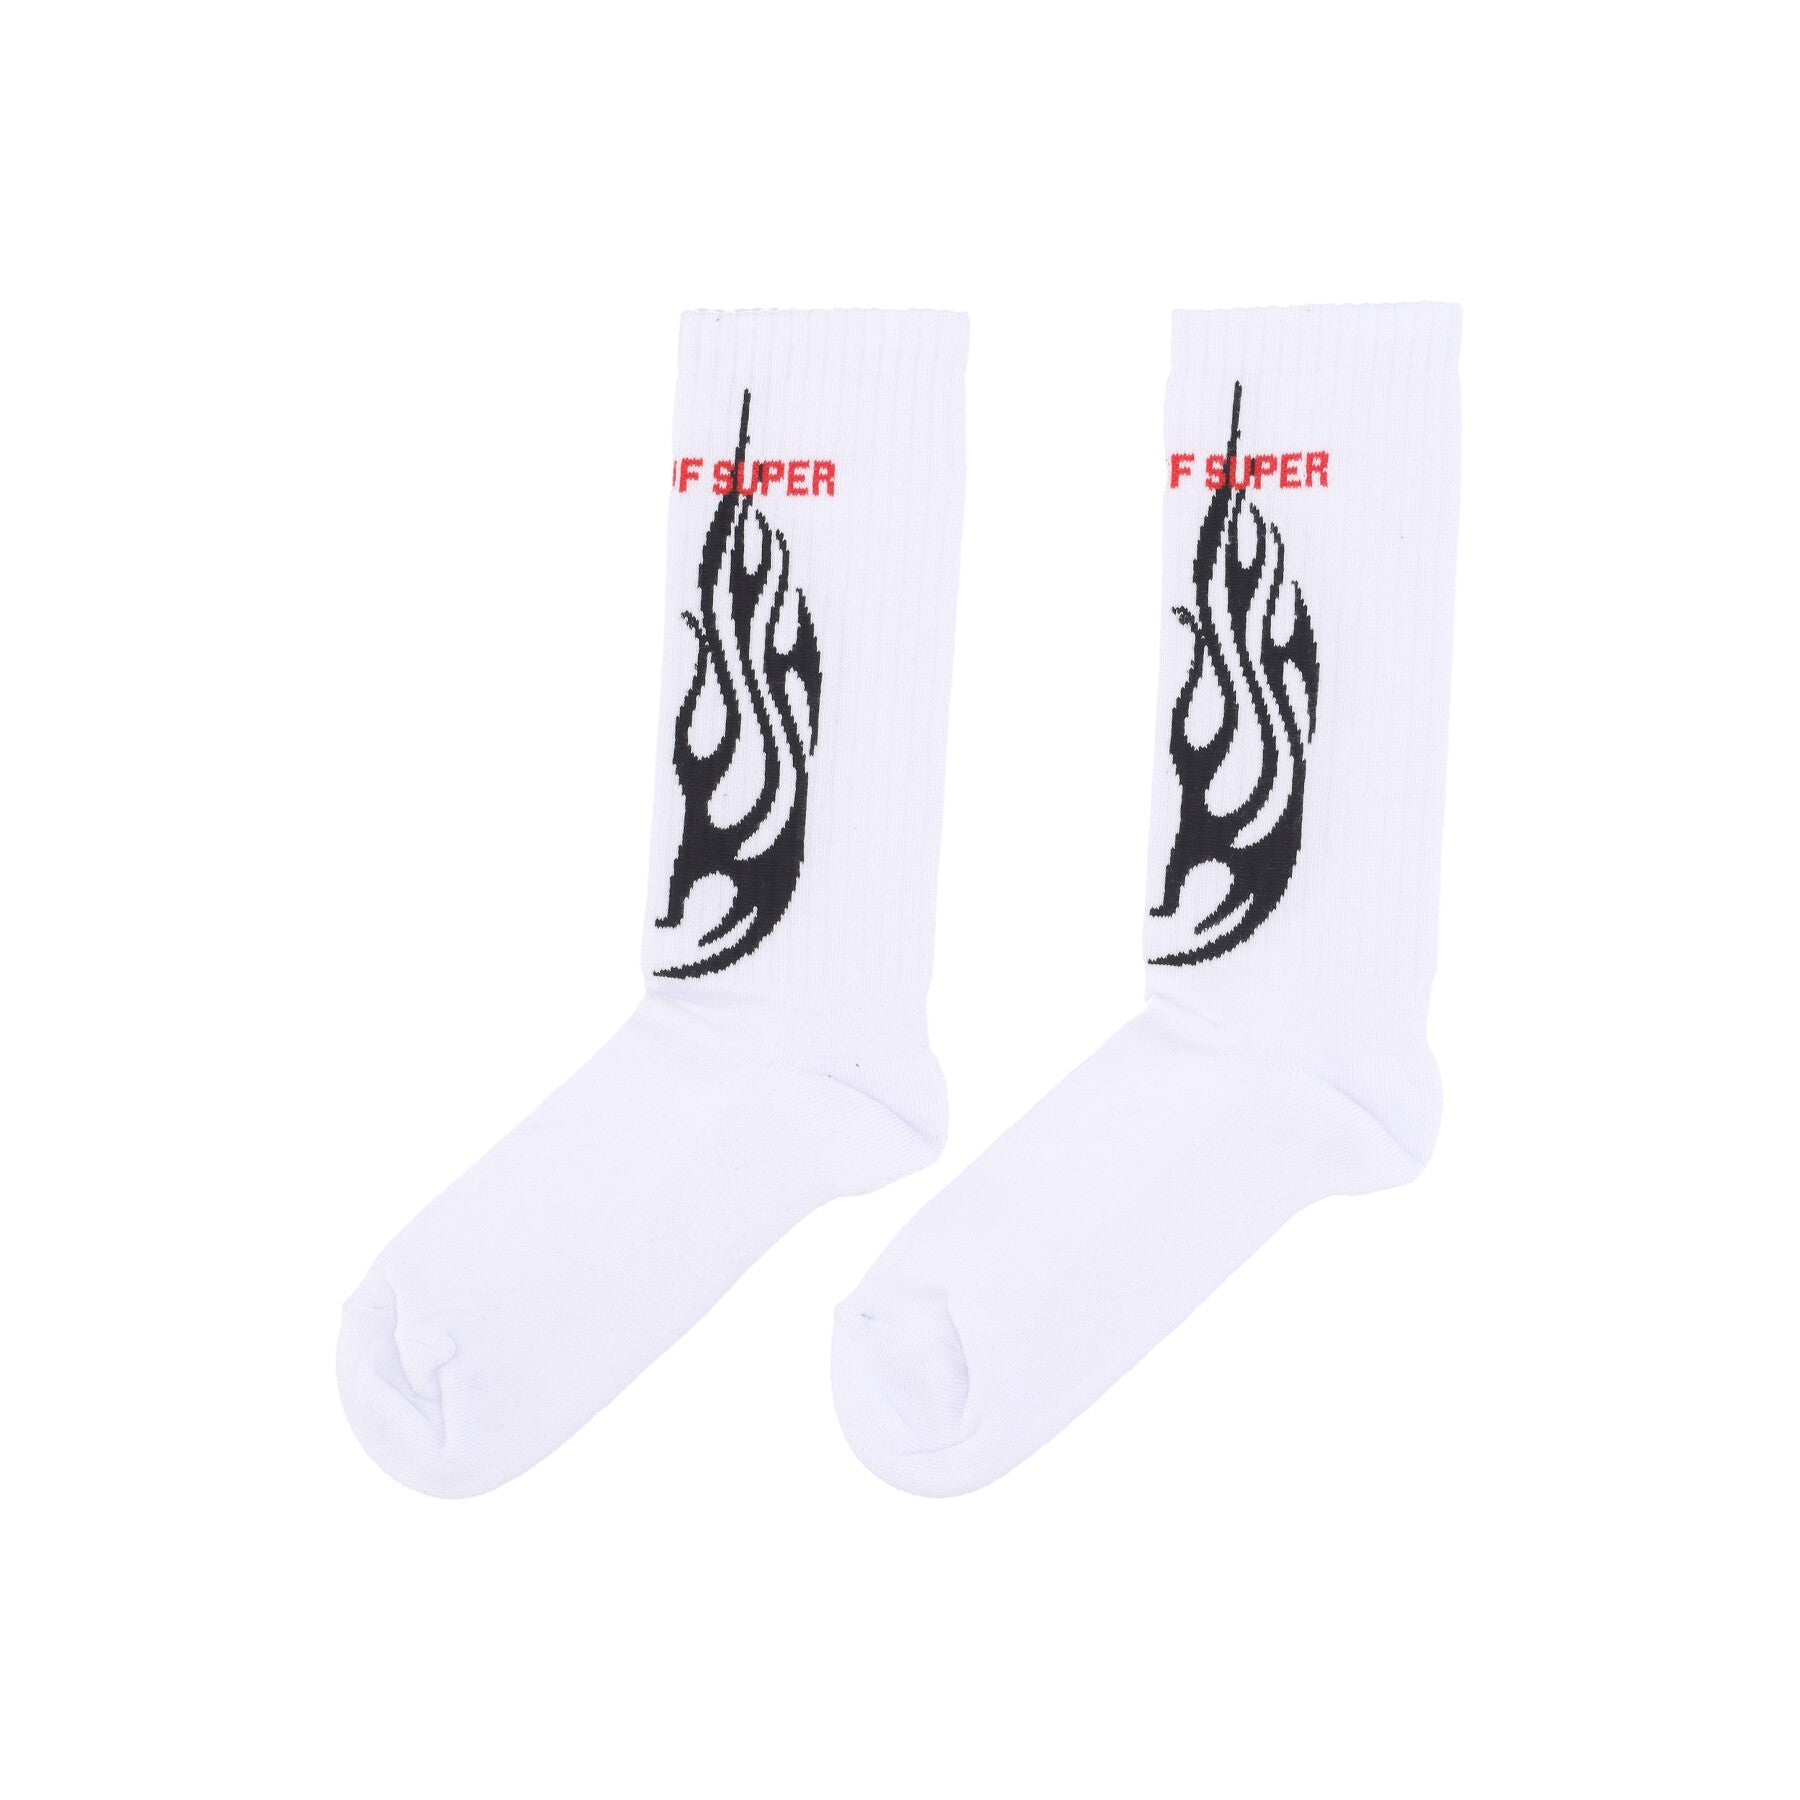 Vision Of Super, Calza Media Uomo Logo Flames Socks, White/black/red